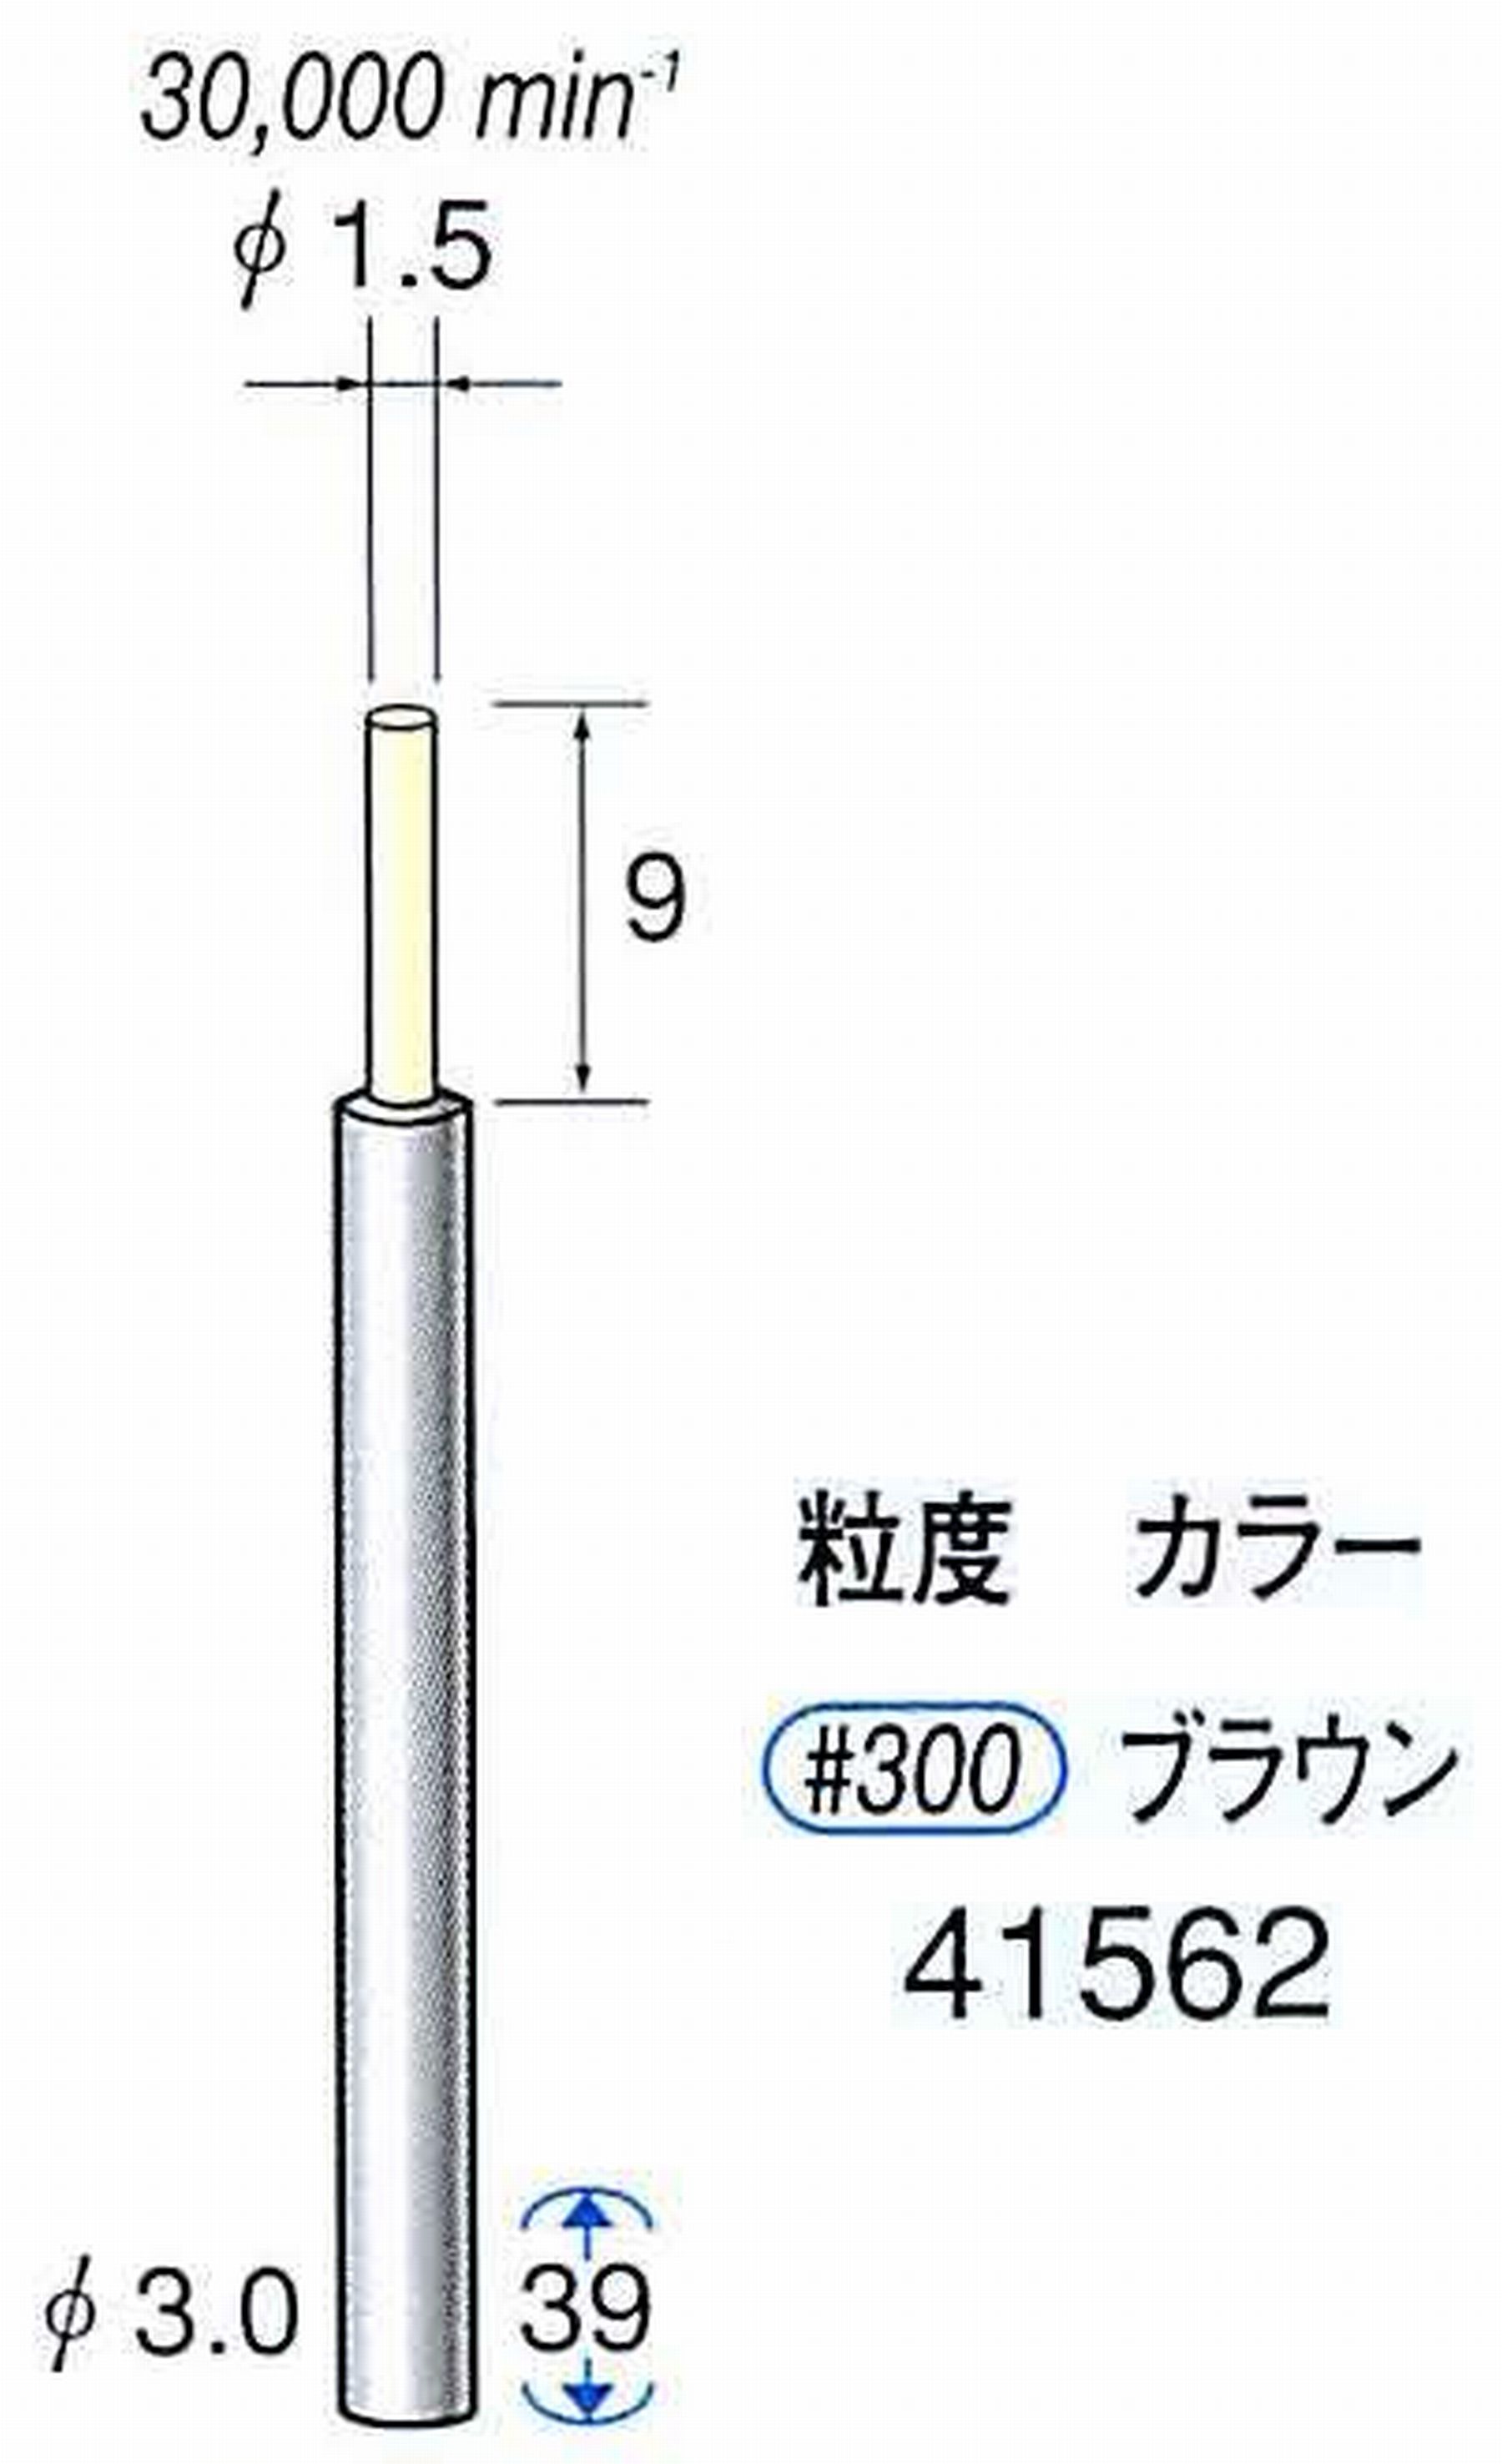 ナカニシ/NAKANISHI セラファイバー精密軸付砥石(カラー ブラウン) 軸径(シャンク) φ3.0mm 41562